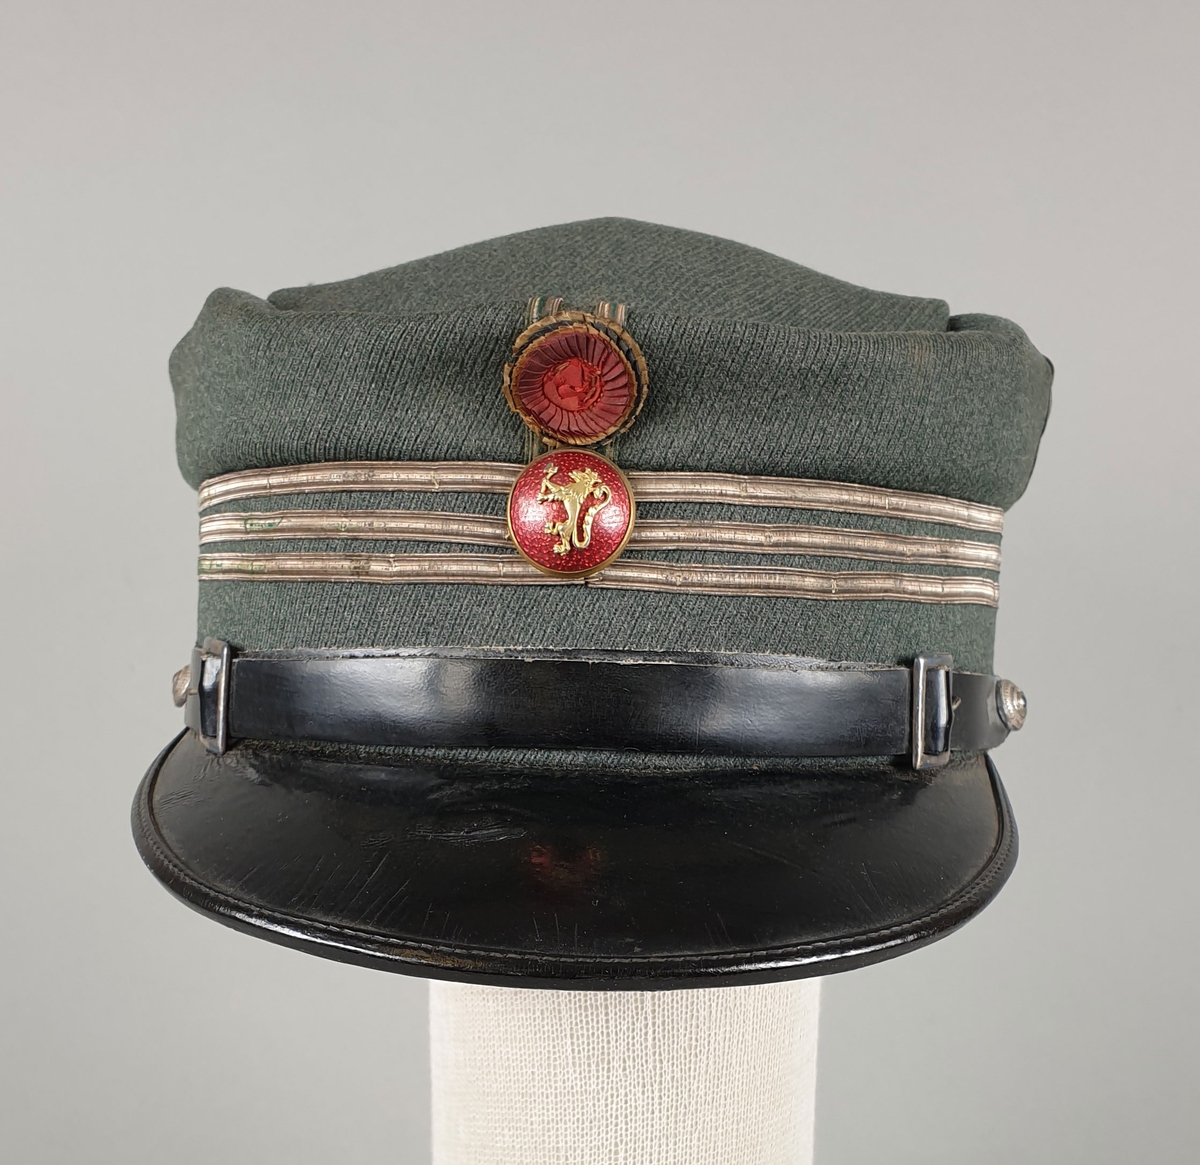 Grønn uniformslue av ull med tre striper rundt pullen, rød knapp med riksvåpen og rosett i front.